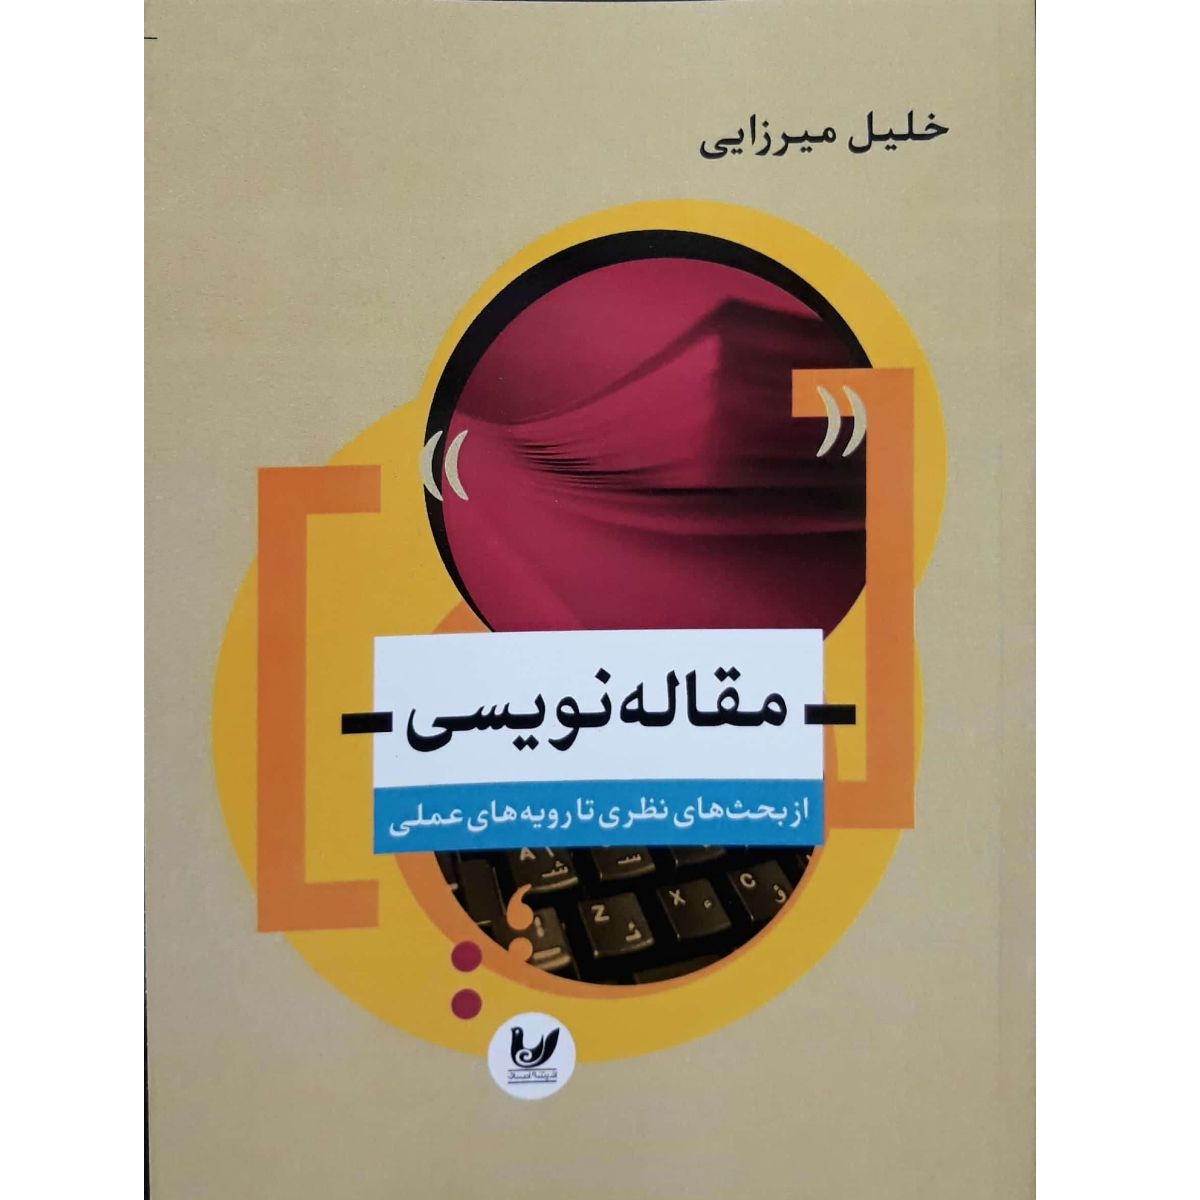 کتاب مقاله نویسی از بحث های نظری تا رویه های عملی اثر خلیل میرزایی انتشارات اندیشه احسان